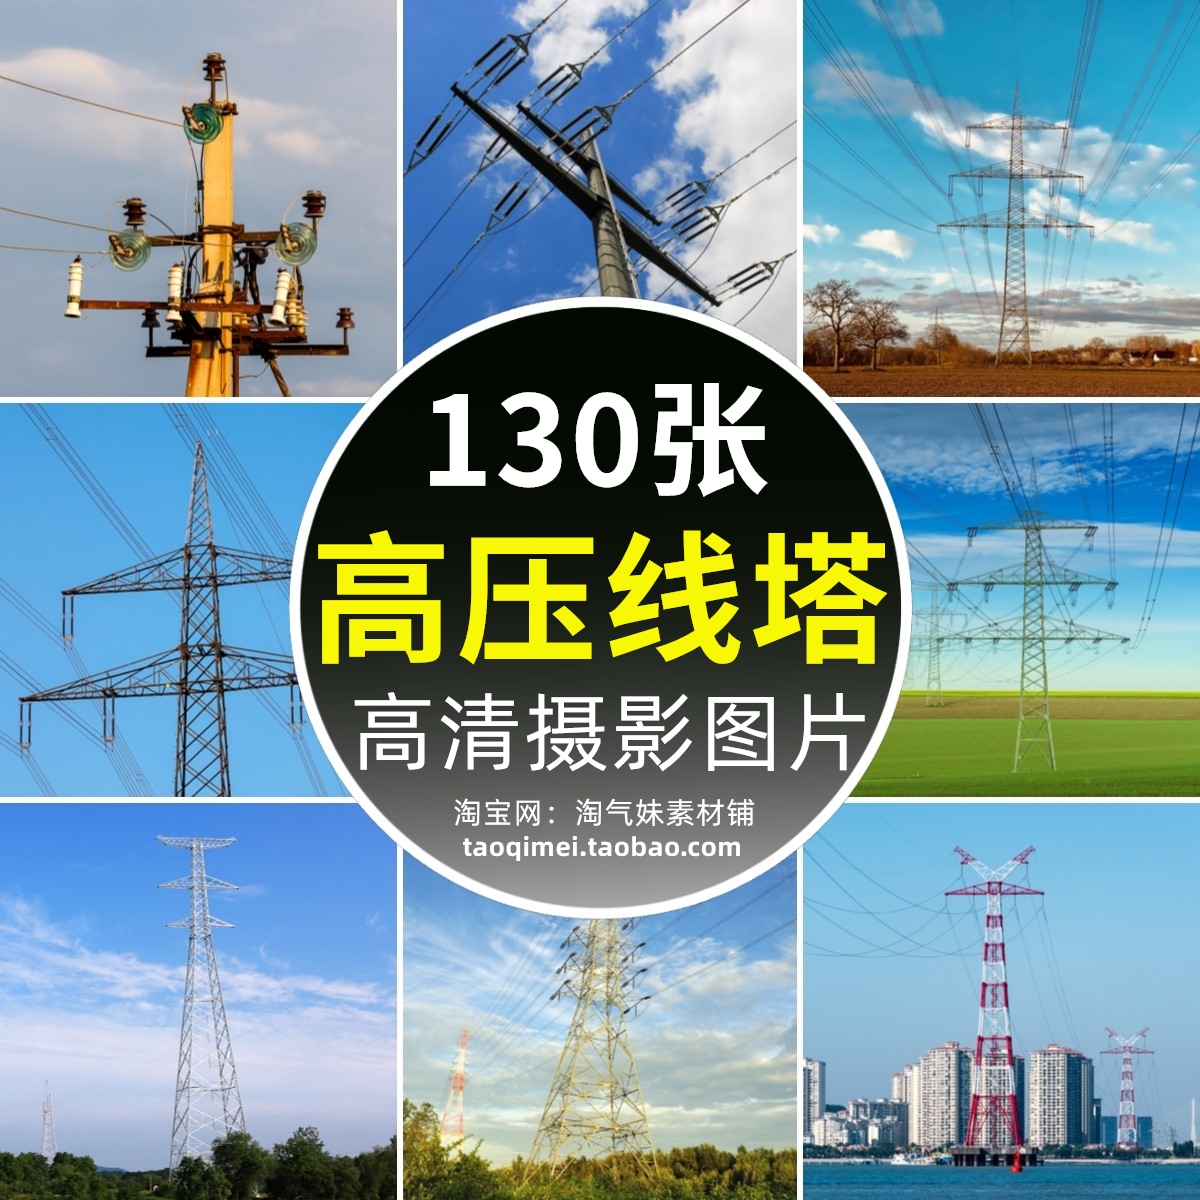 高清JPG电力设施图片高压线输电铁塔电线杆电网能源背景摄影素材